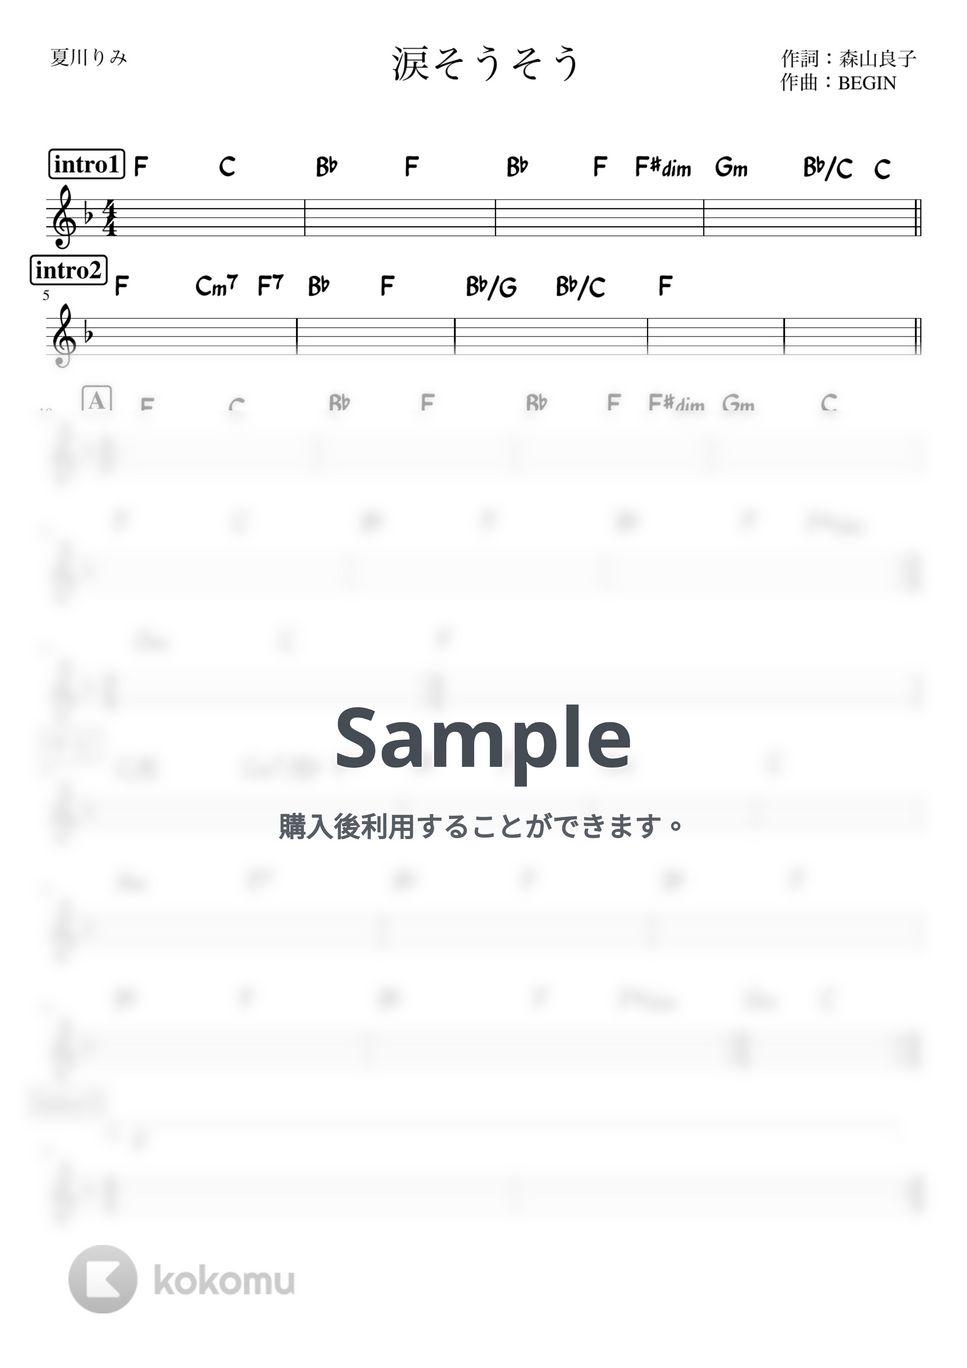 夏川りみ - 涙そうそう (バンド用コード譜) by 箱譜屋